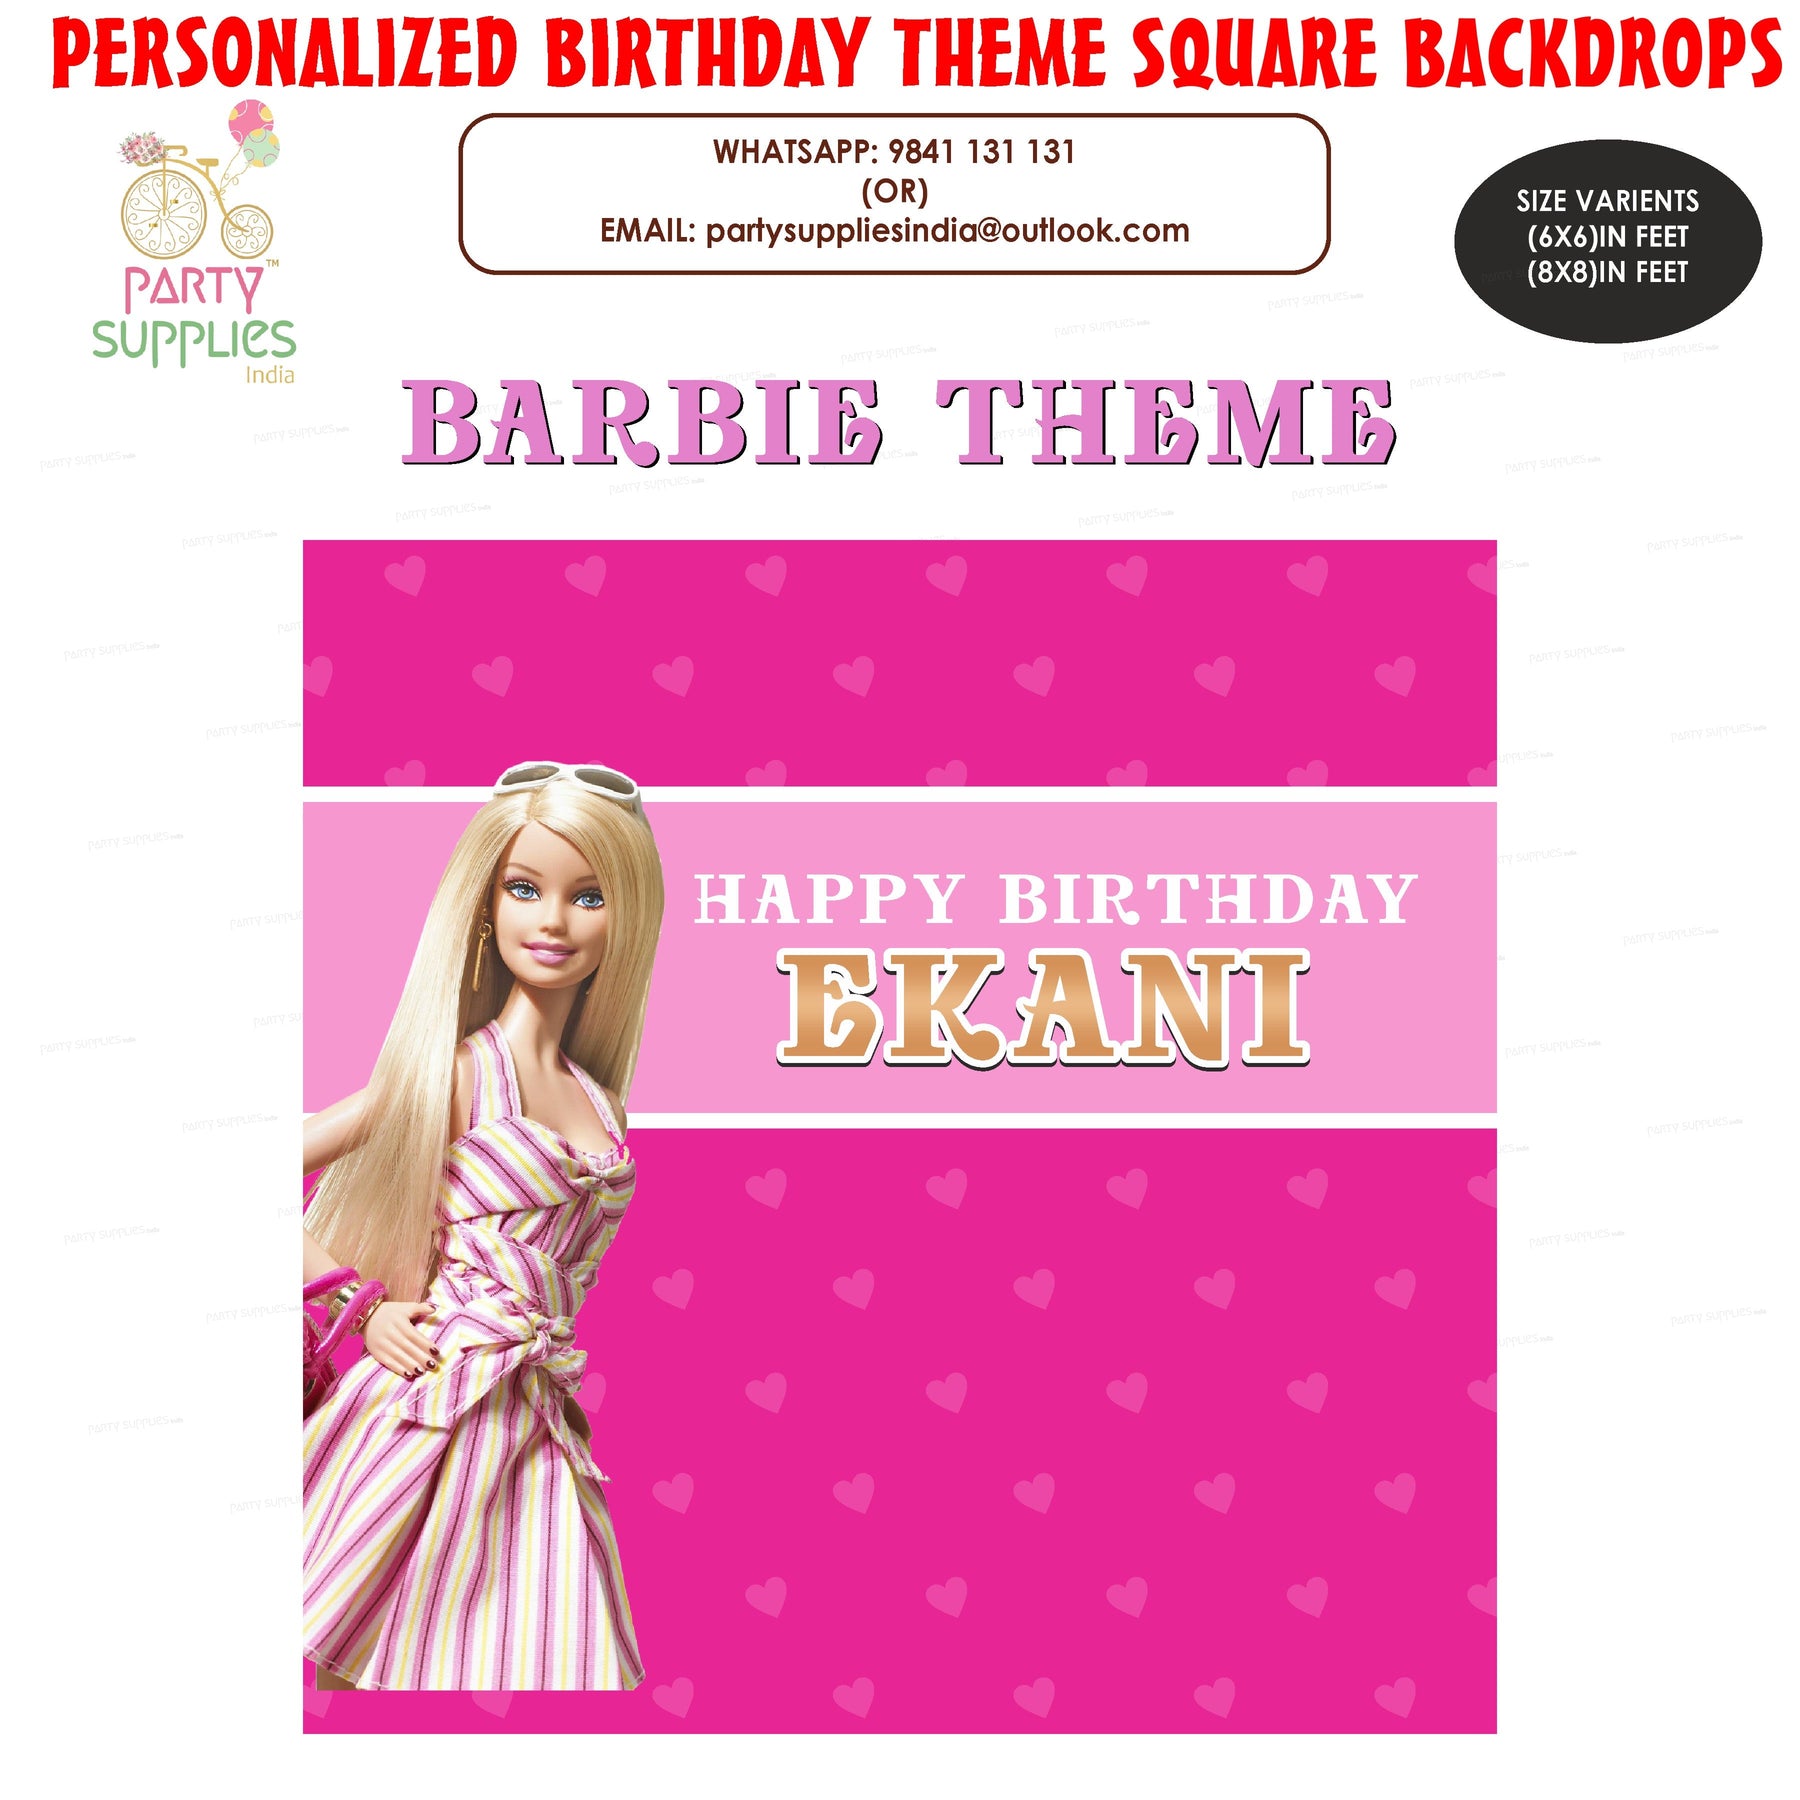 PSI Barbie Theme Square Backdrop